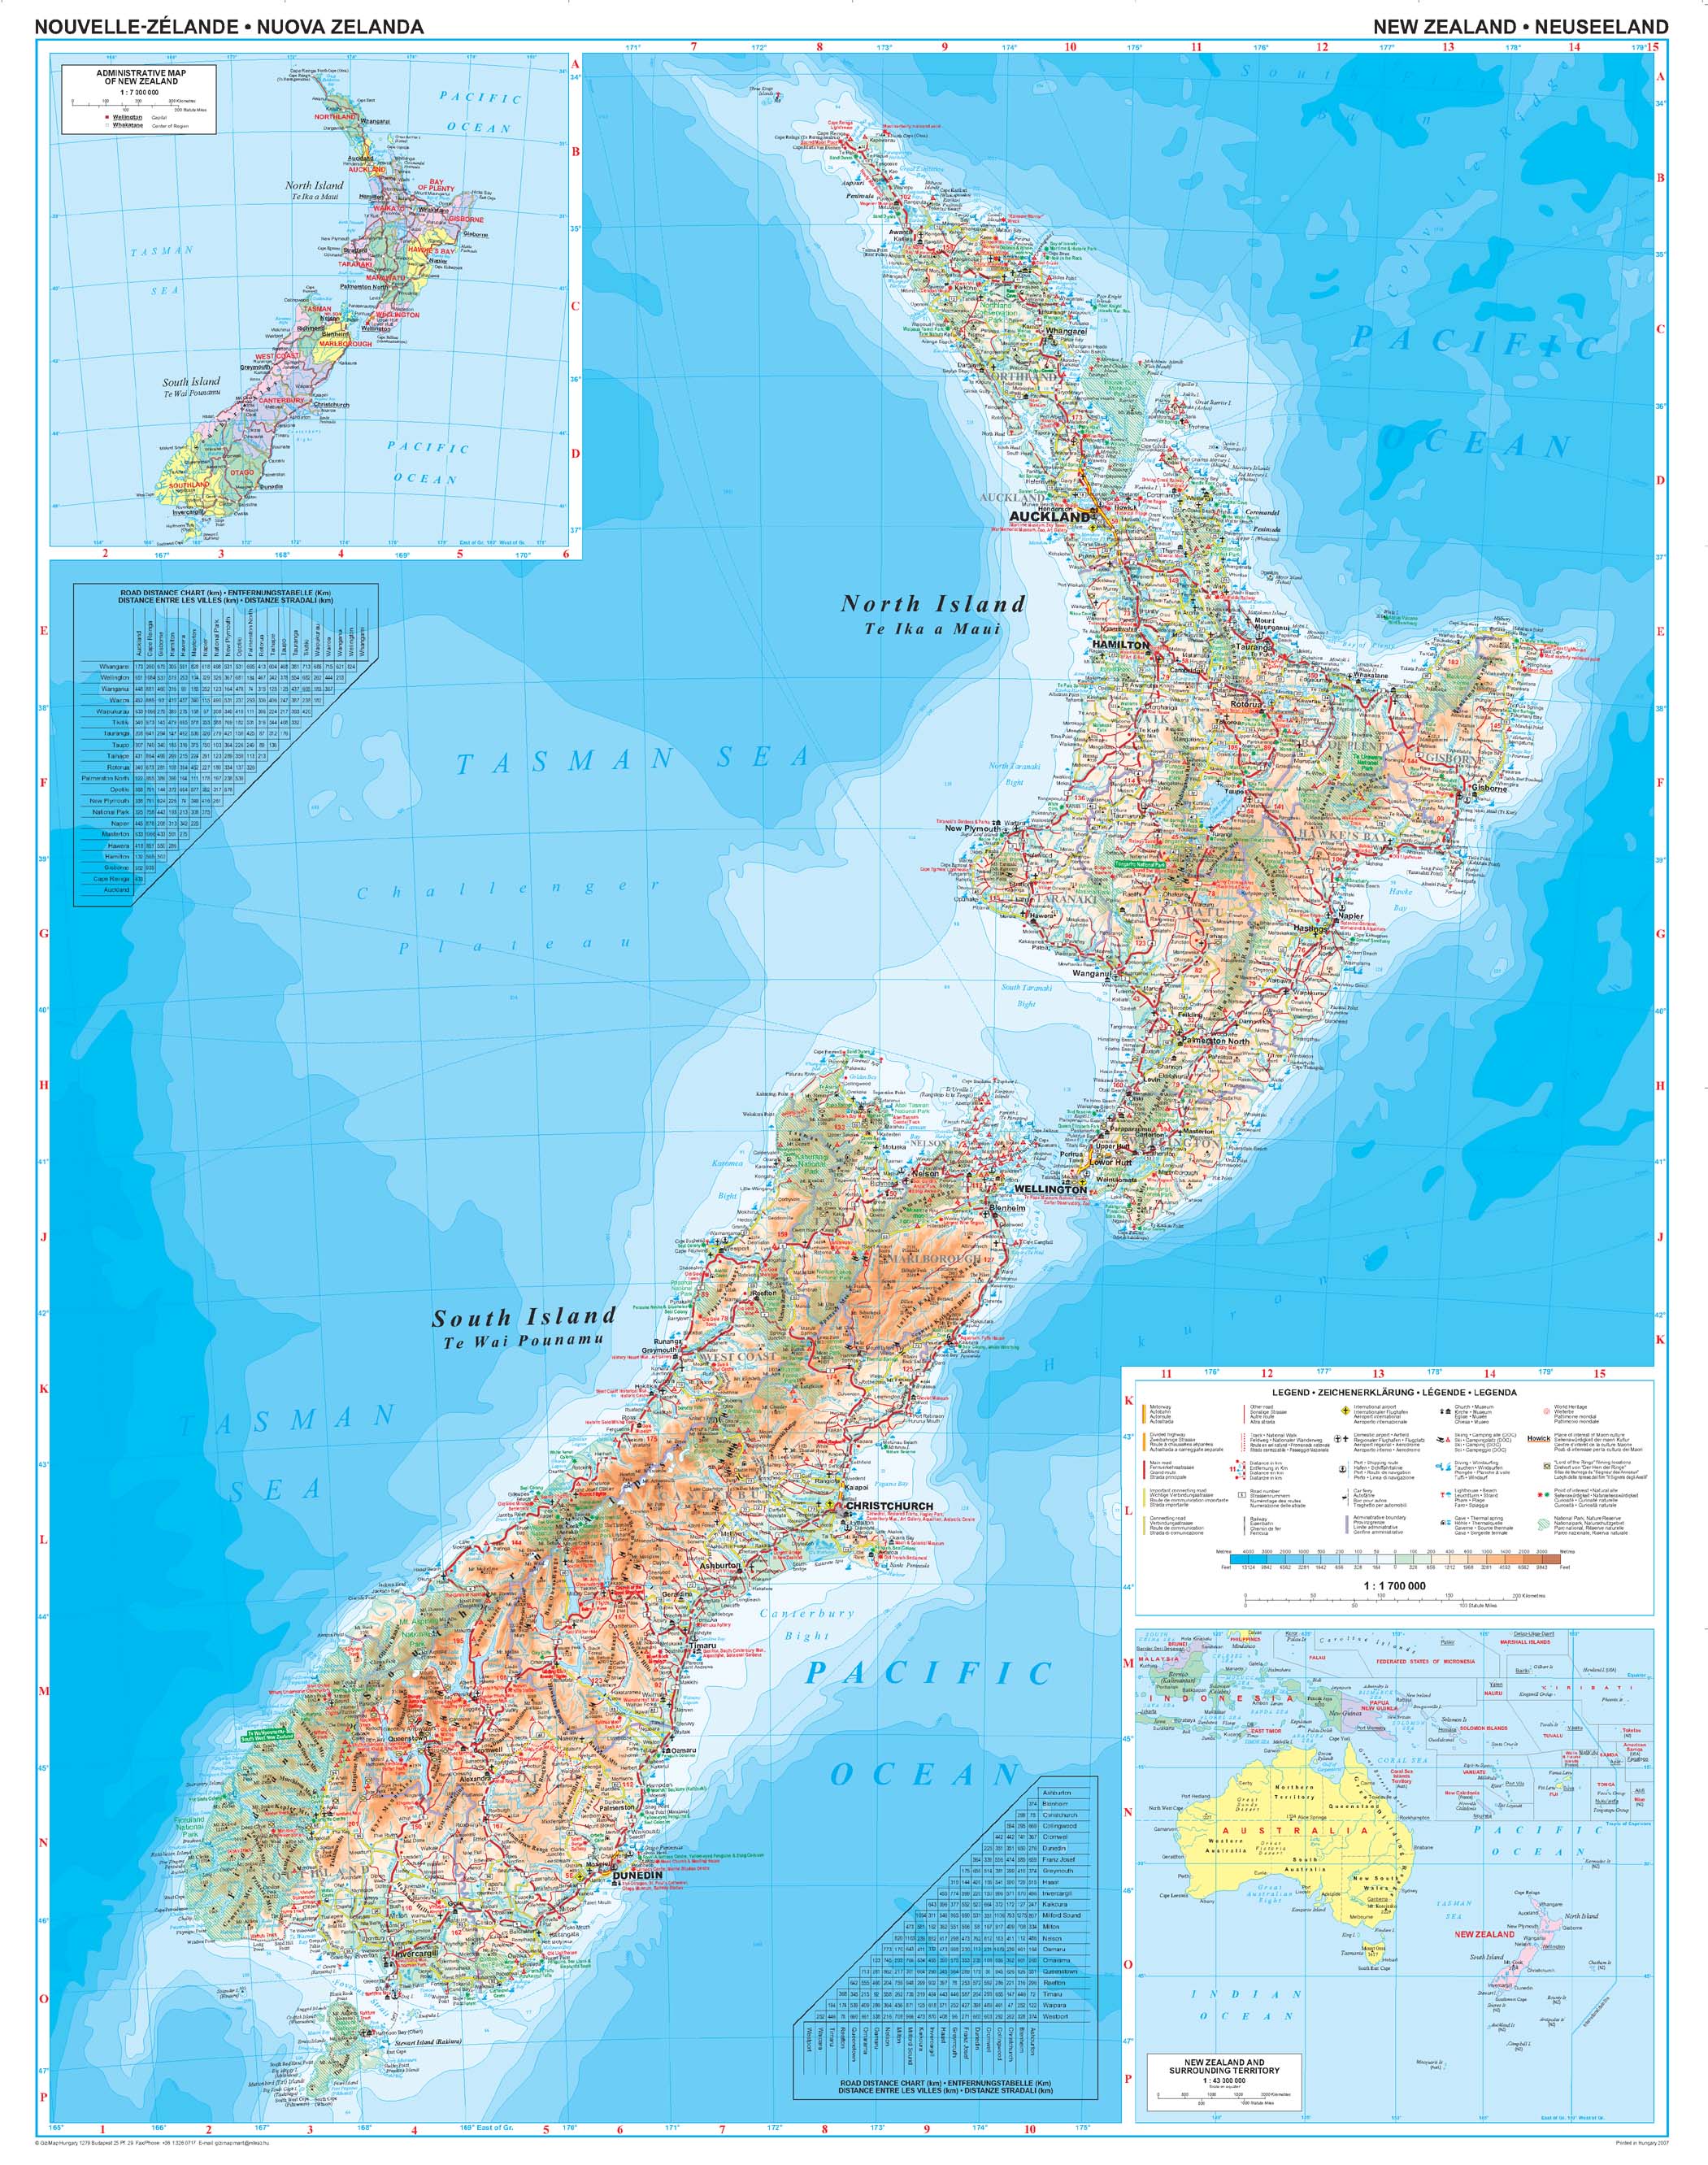 Neuseeland 1:1,7 Mio.